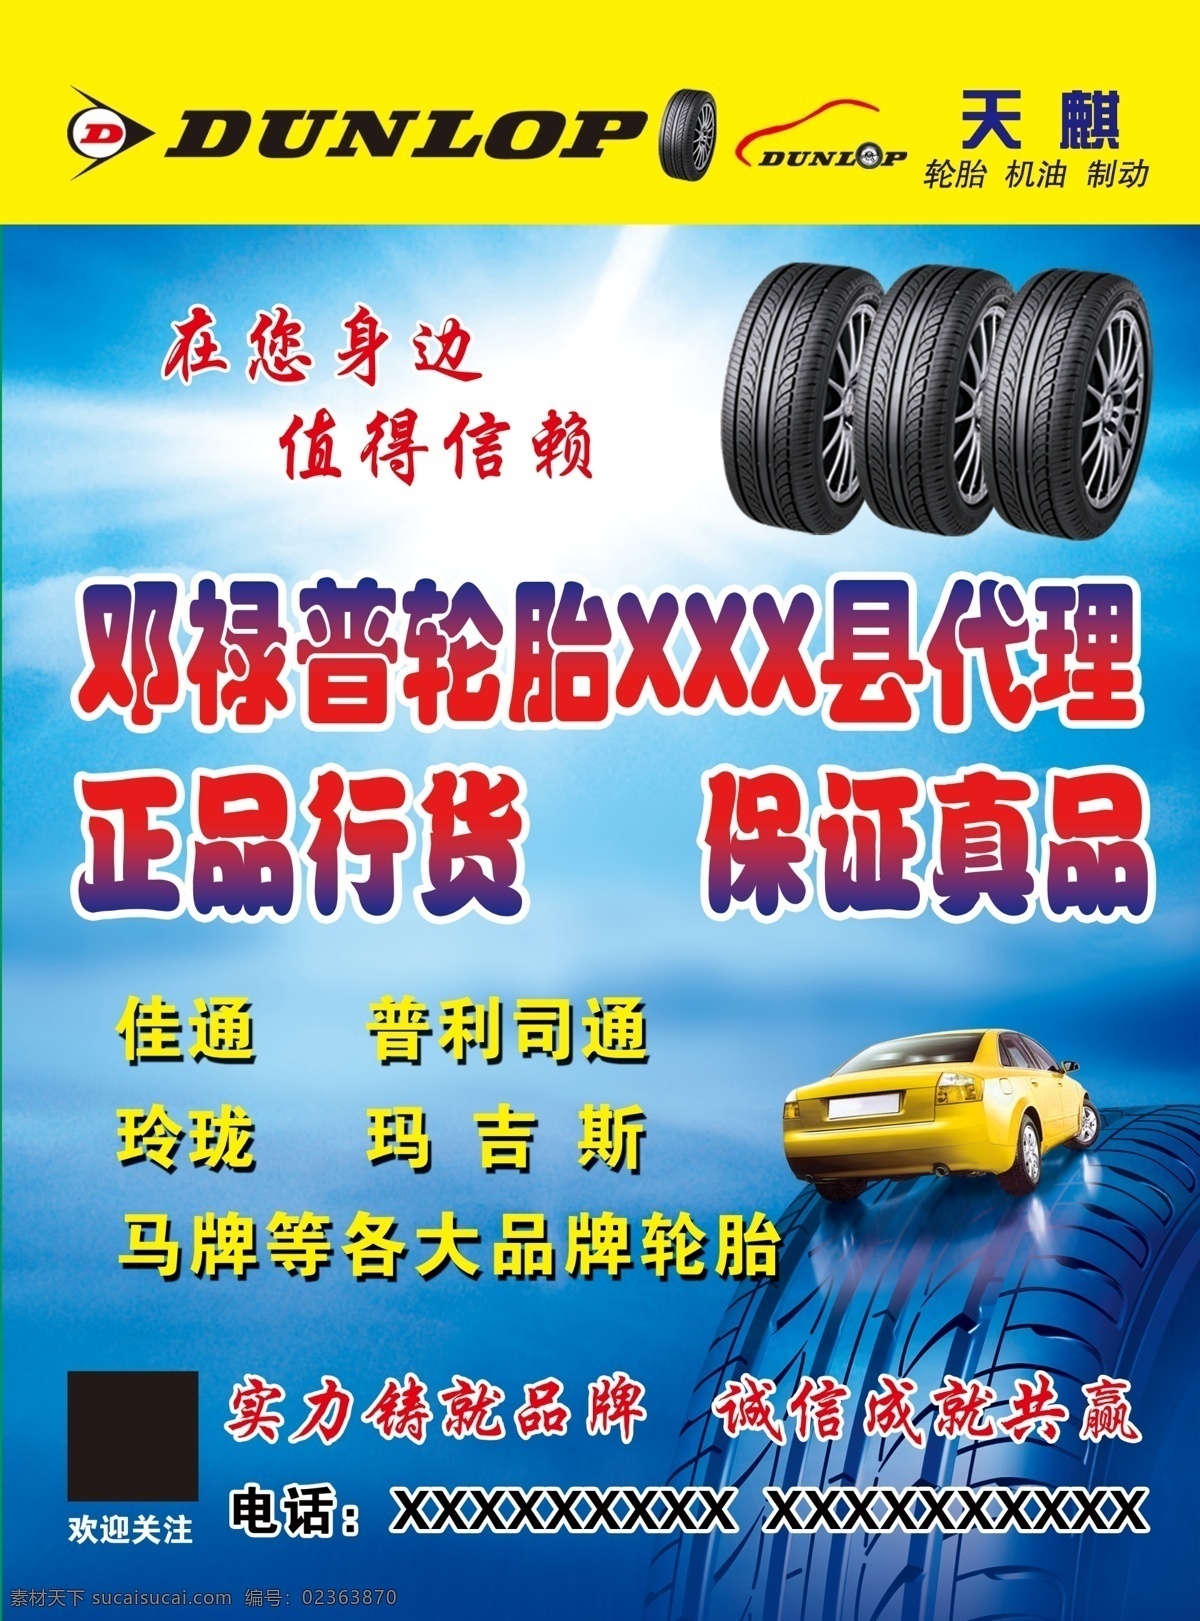 轮胎广告 轮胎 汽车 蓝色背景 邓禄普轮胎 宣传单 宣传广告 广告